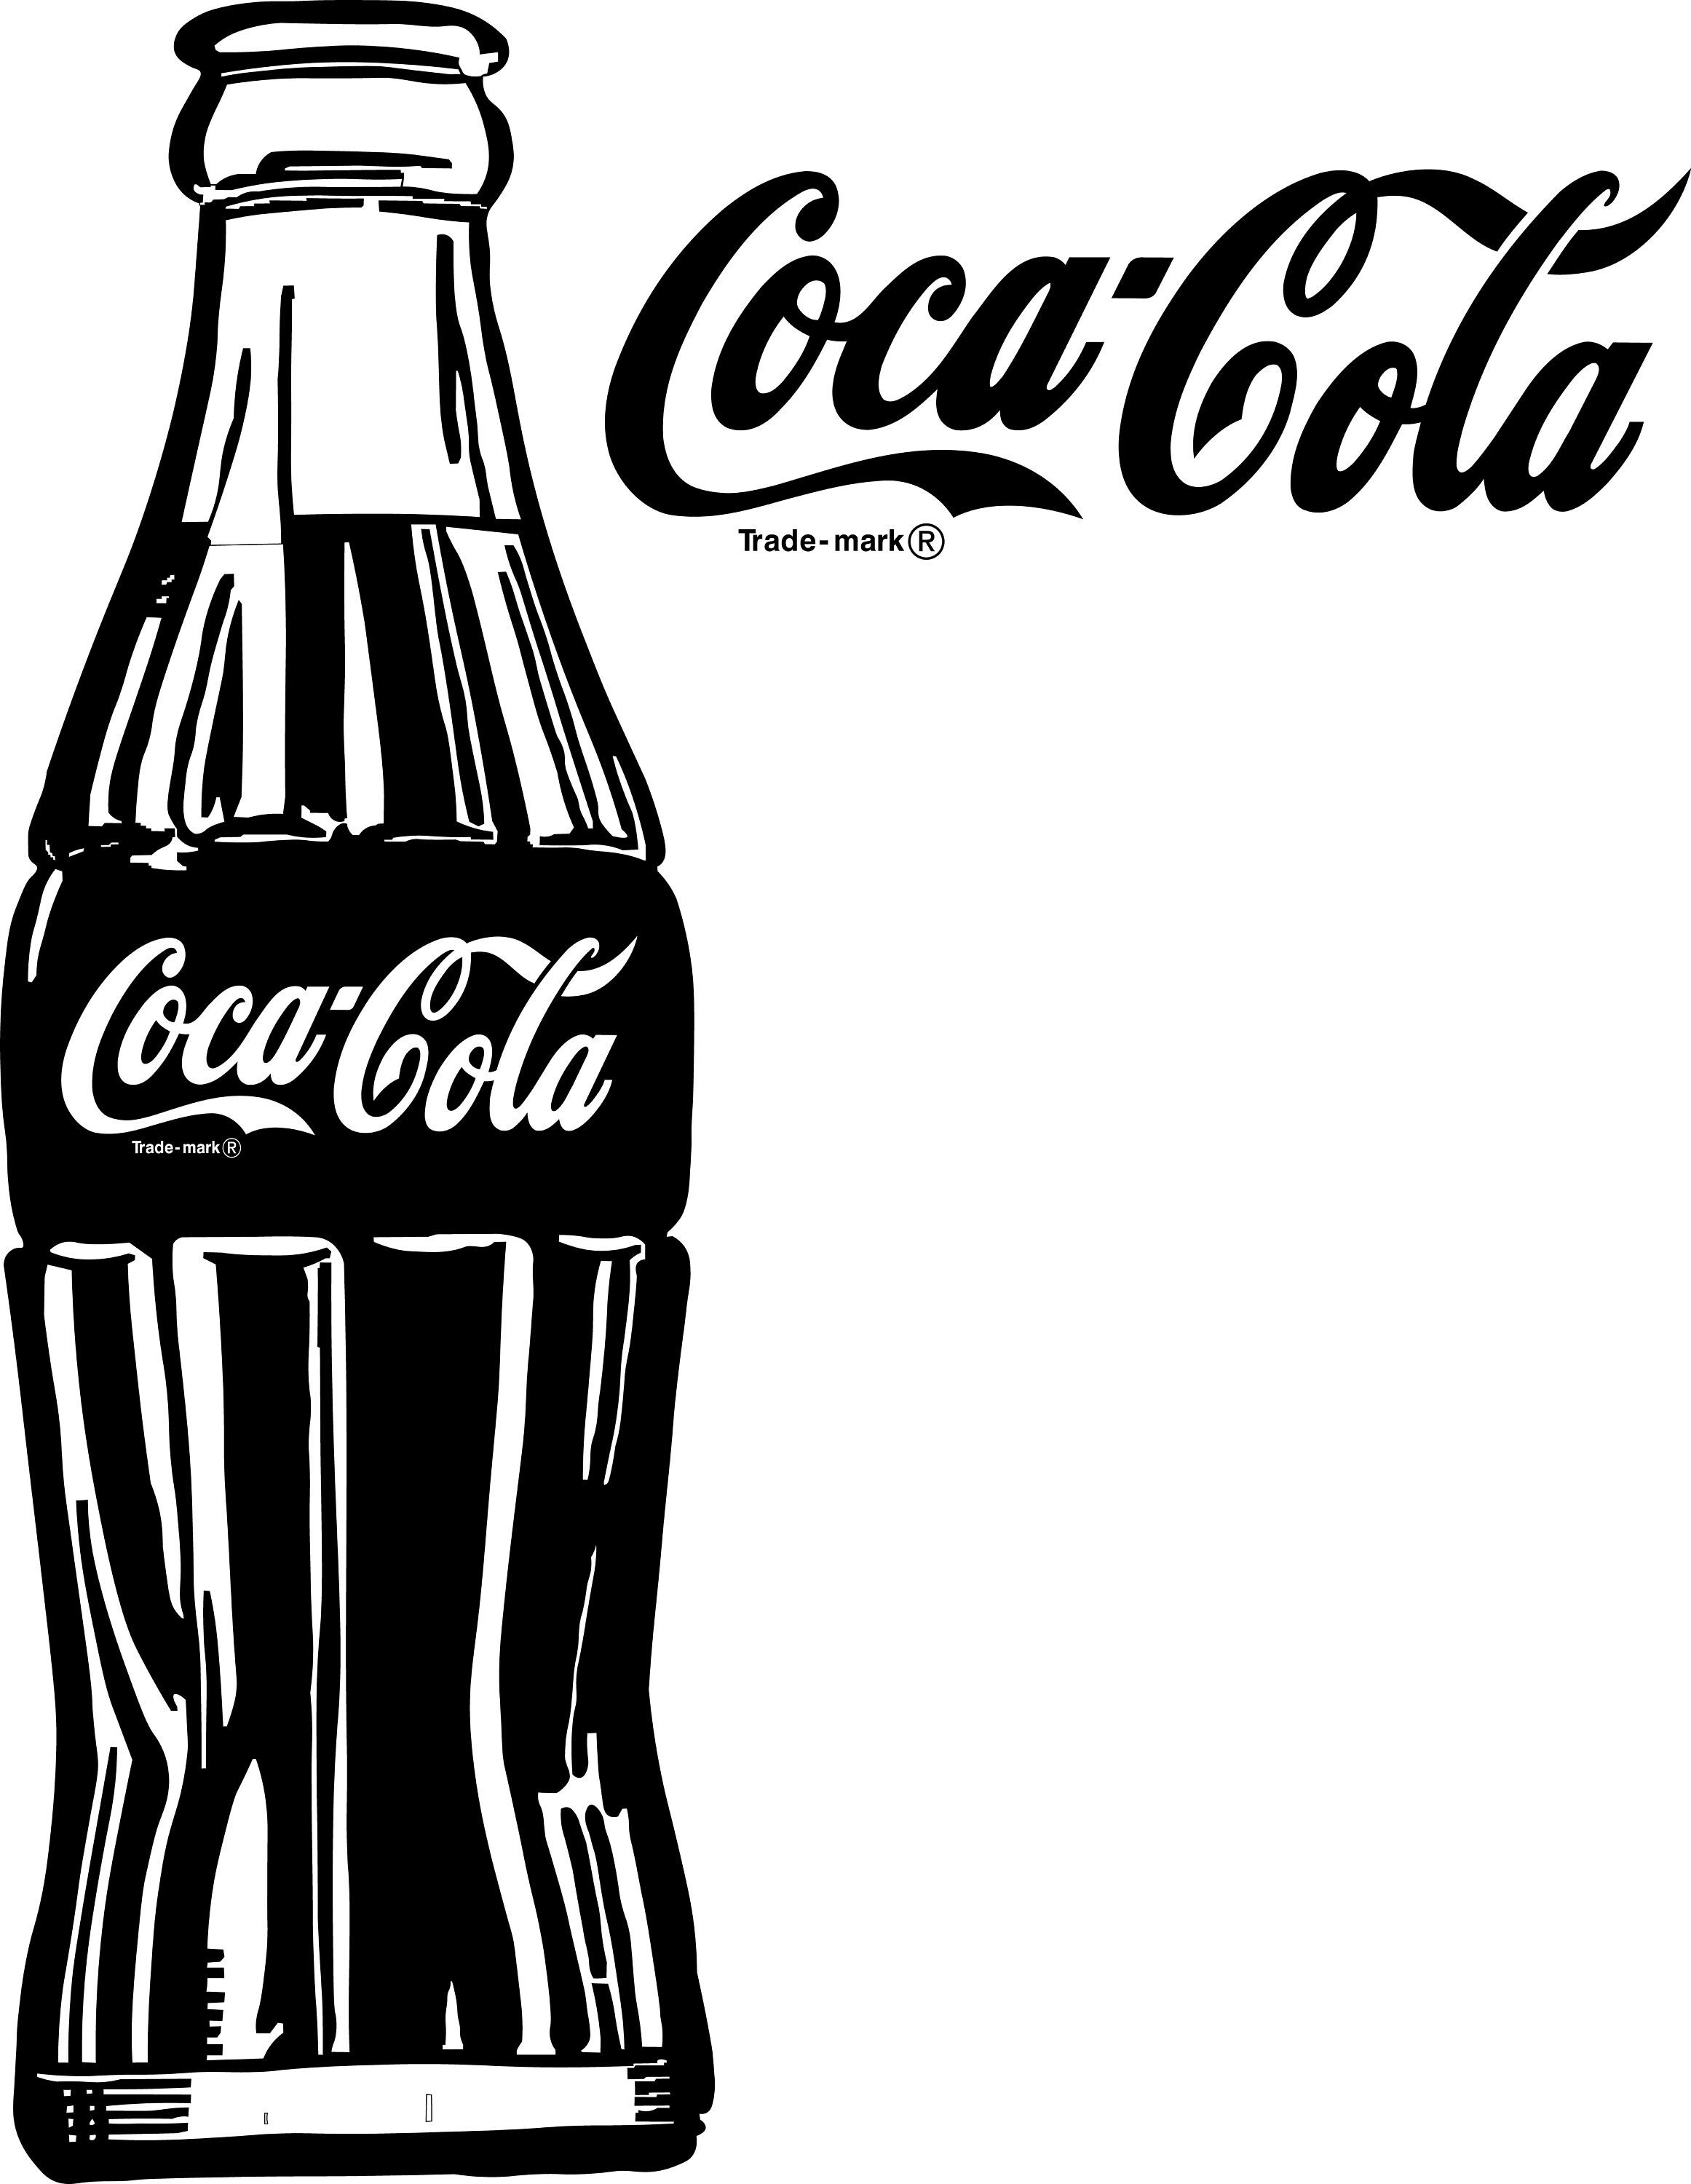 Coca Cola Cricut Svg Coca Cola Png White And Black Coke Svg Coca